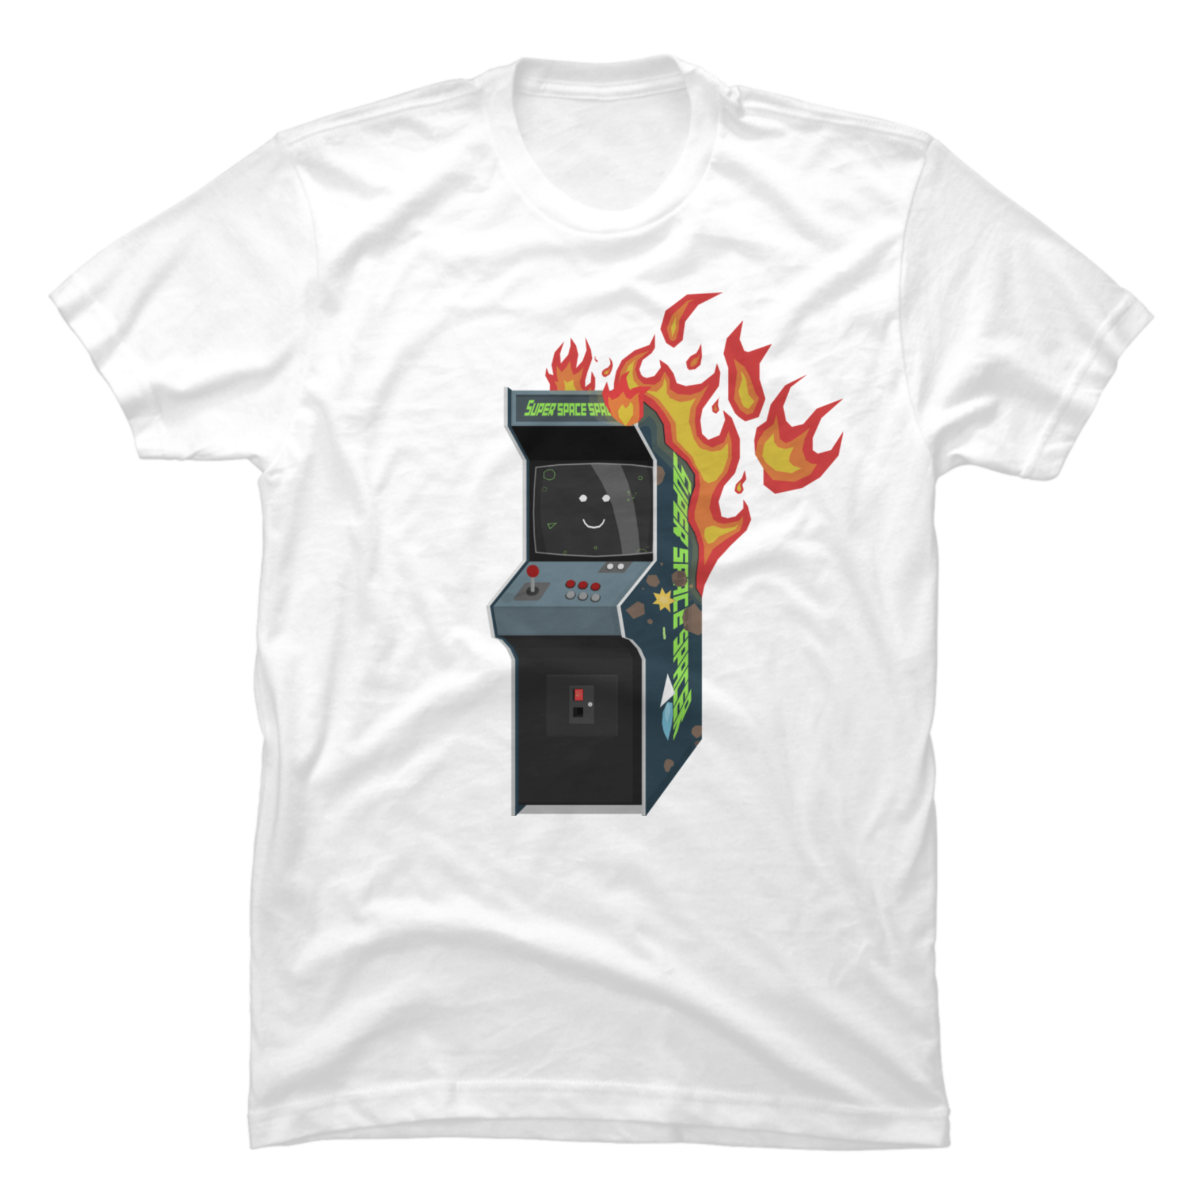 arcade fire shirts